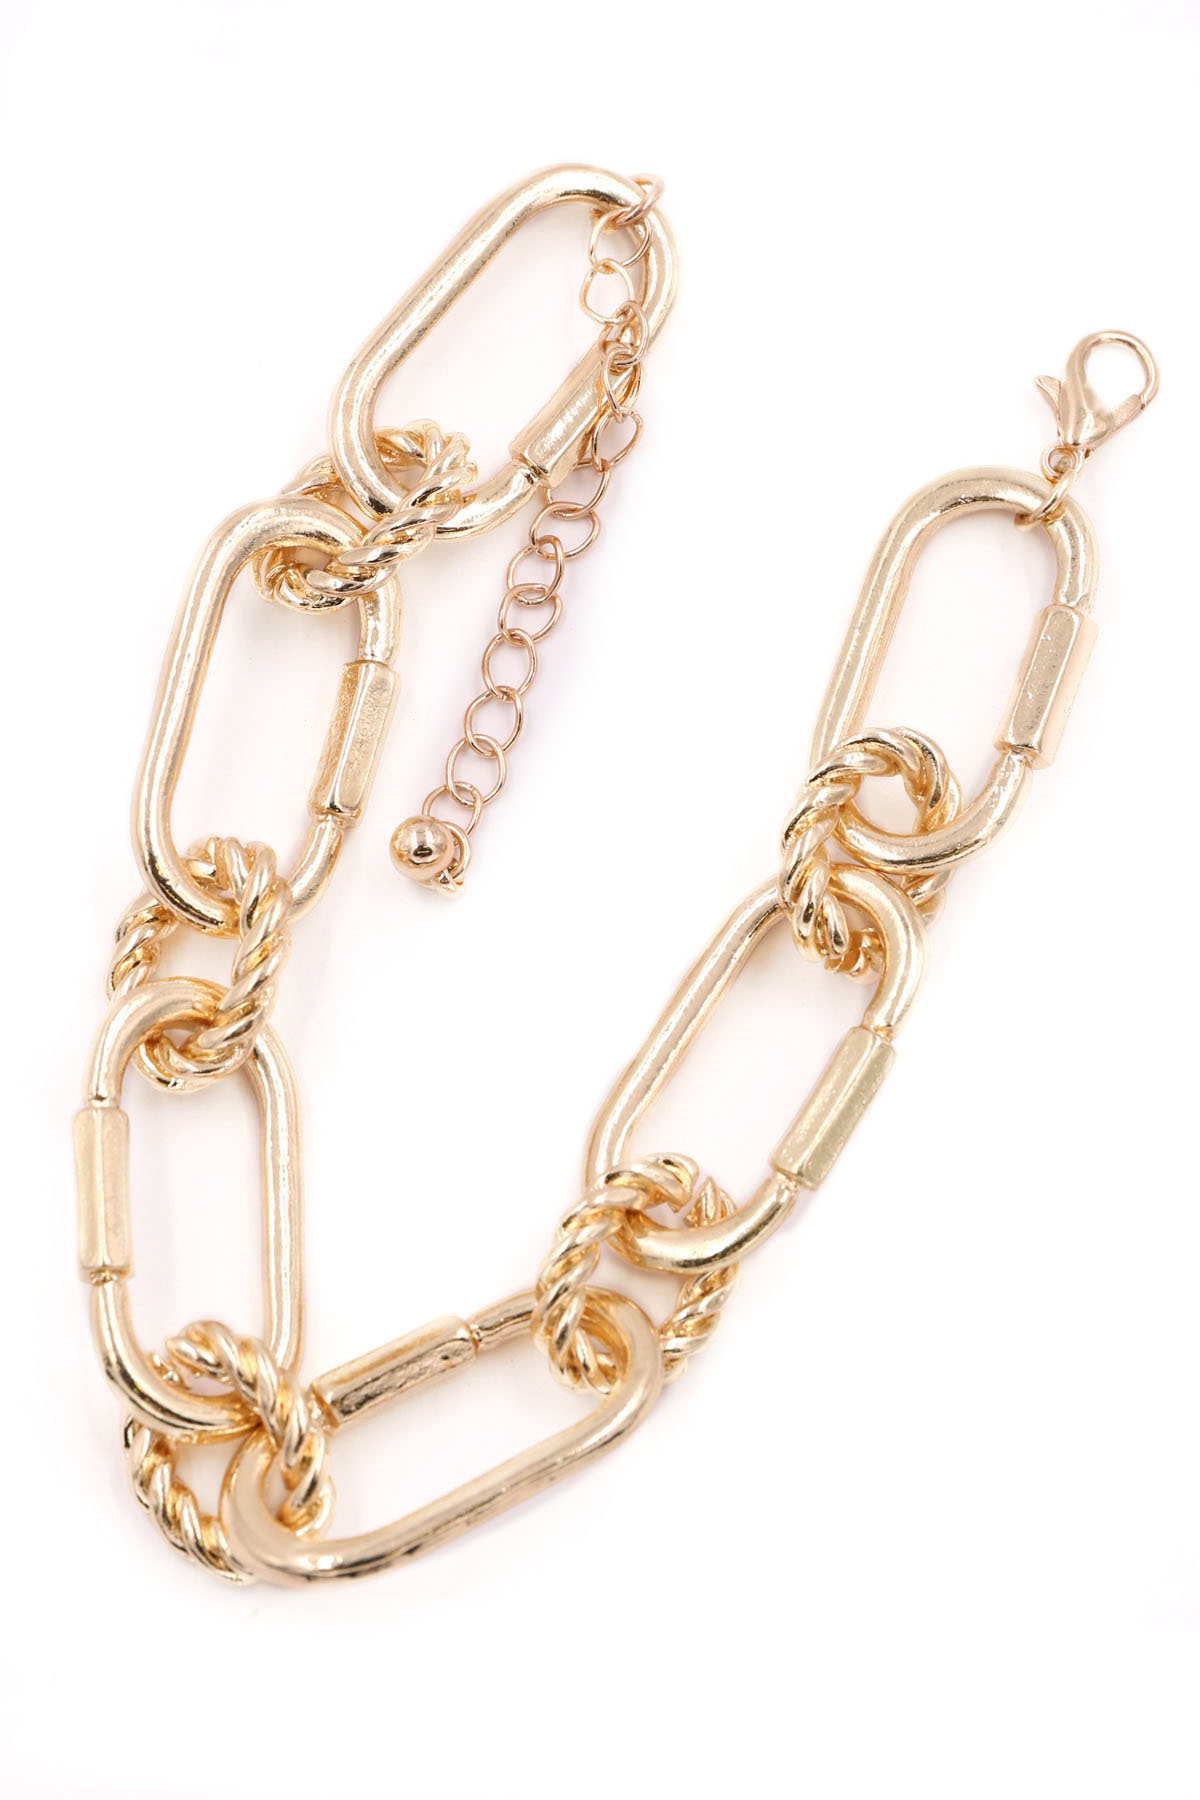 GOLD Chain Bracelet - Bracelets